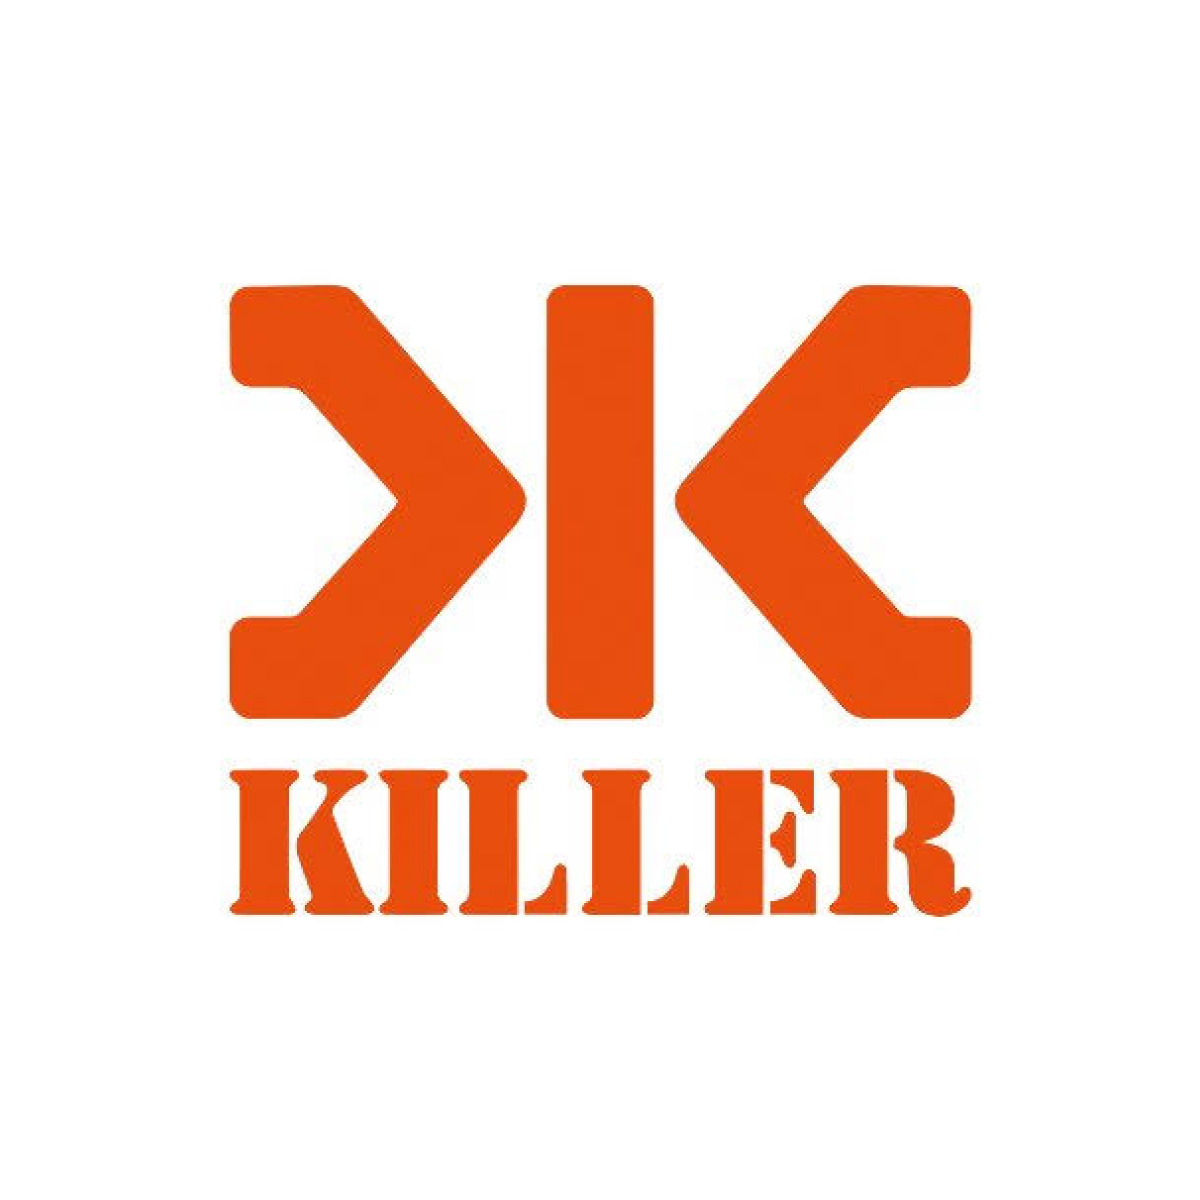 Killer, Next Galleria Malls